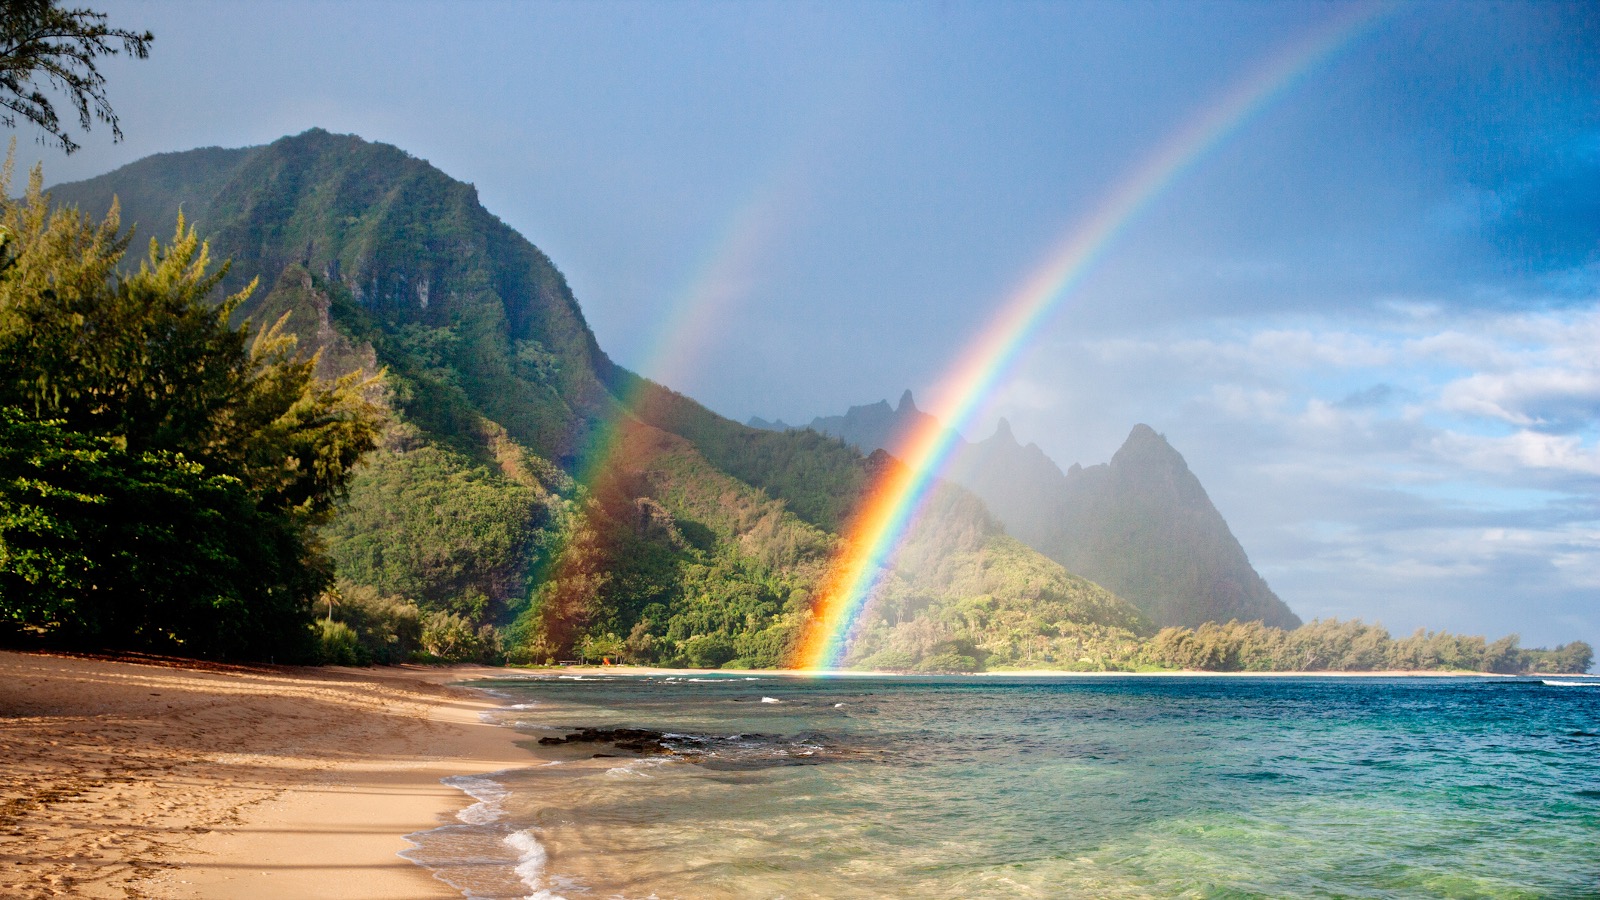 Double rainbow in Hawaii